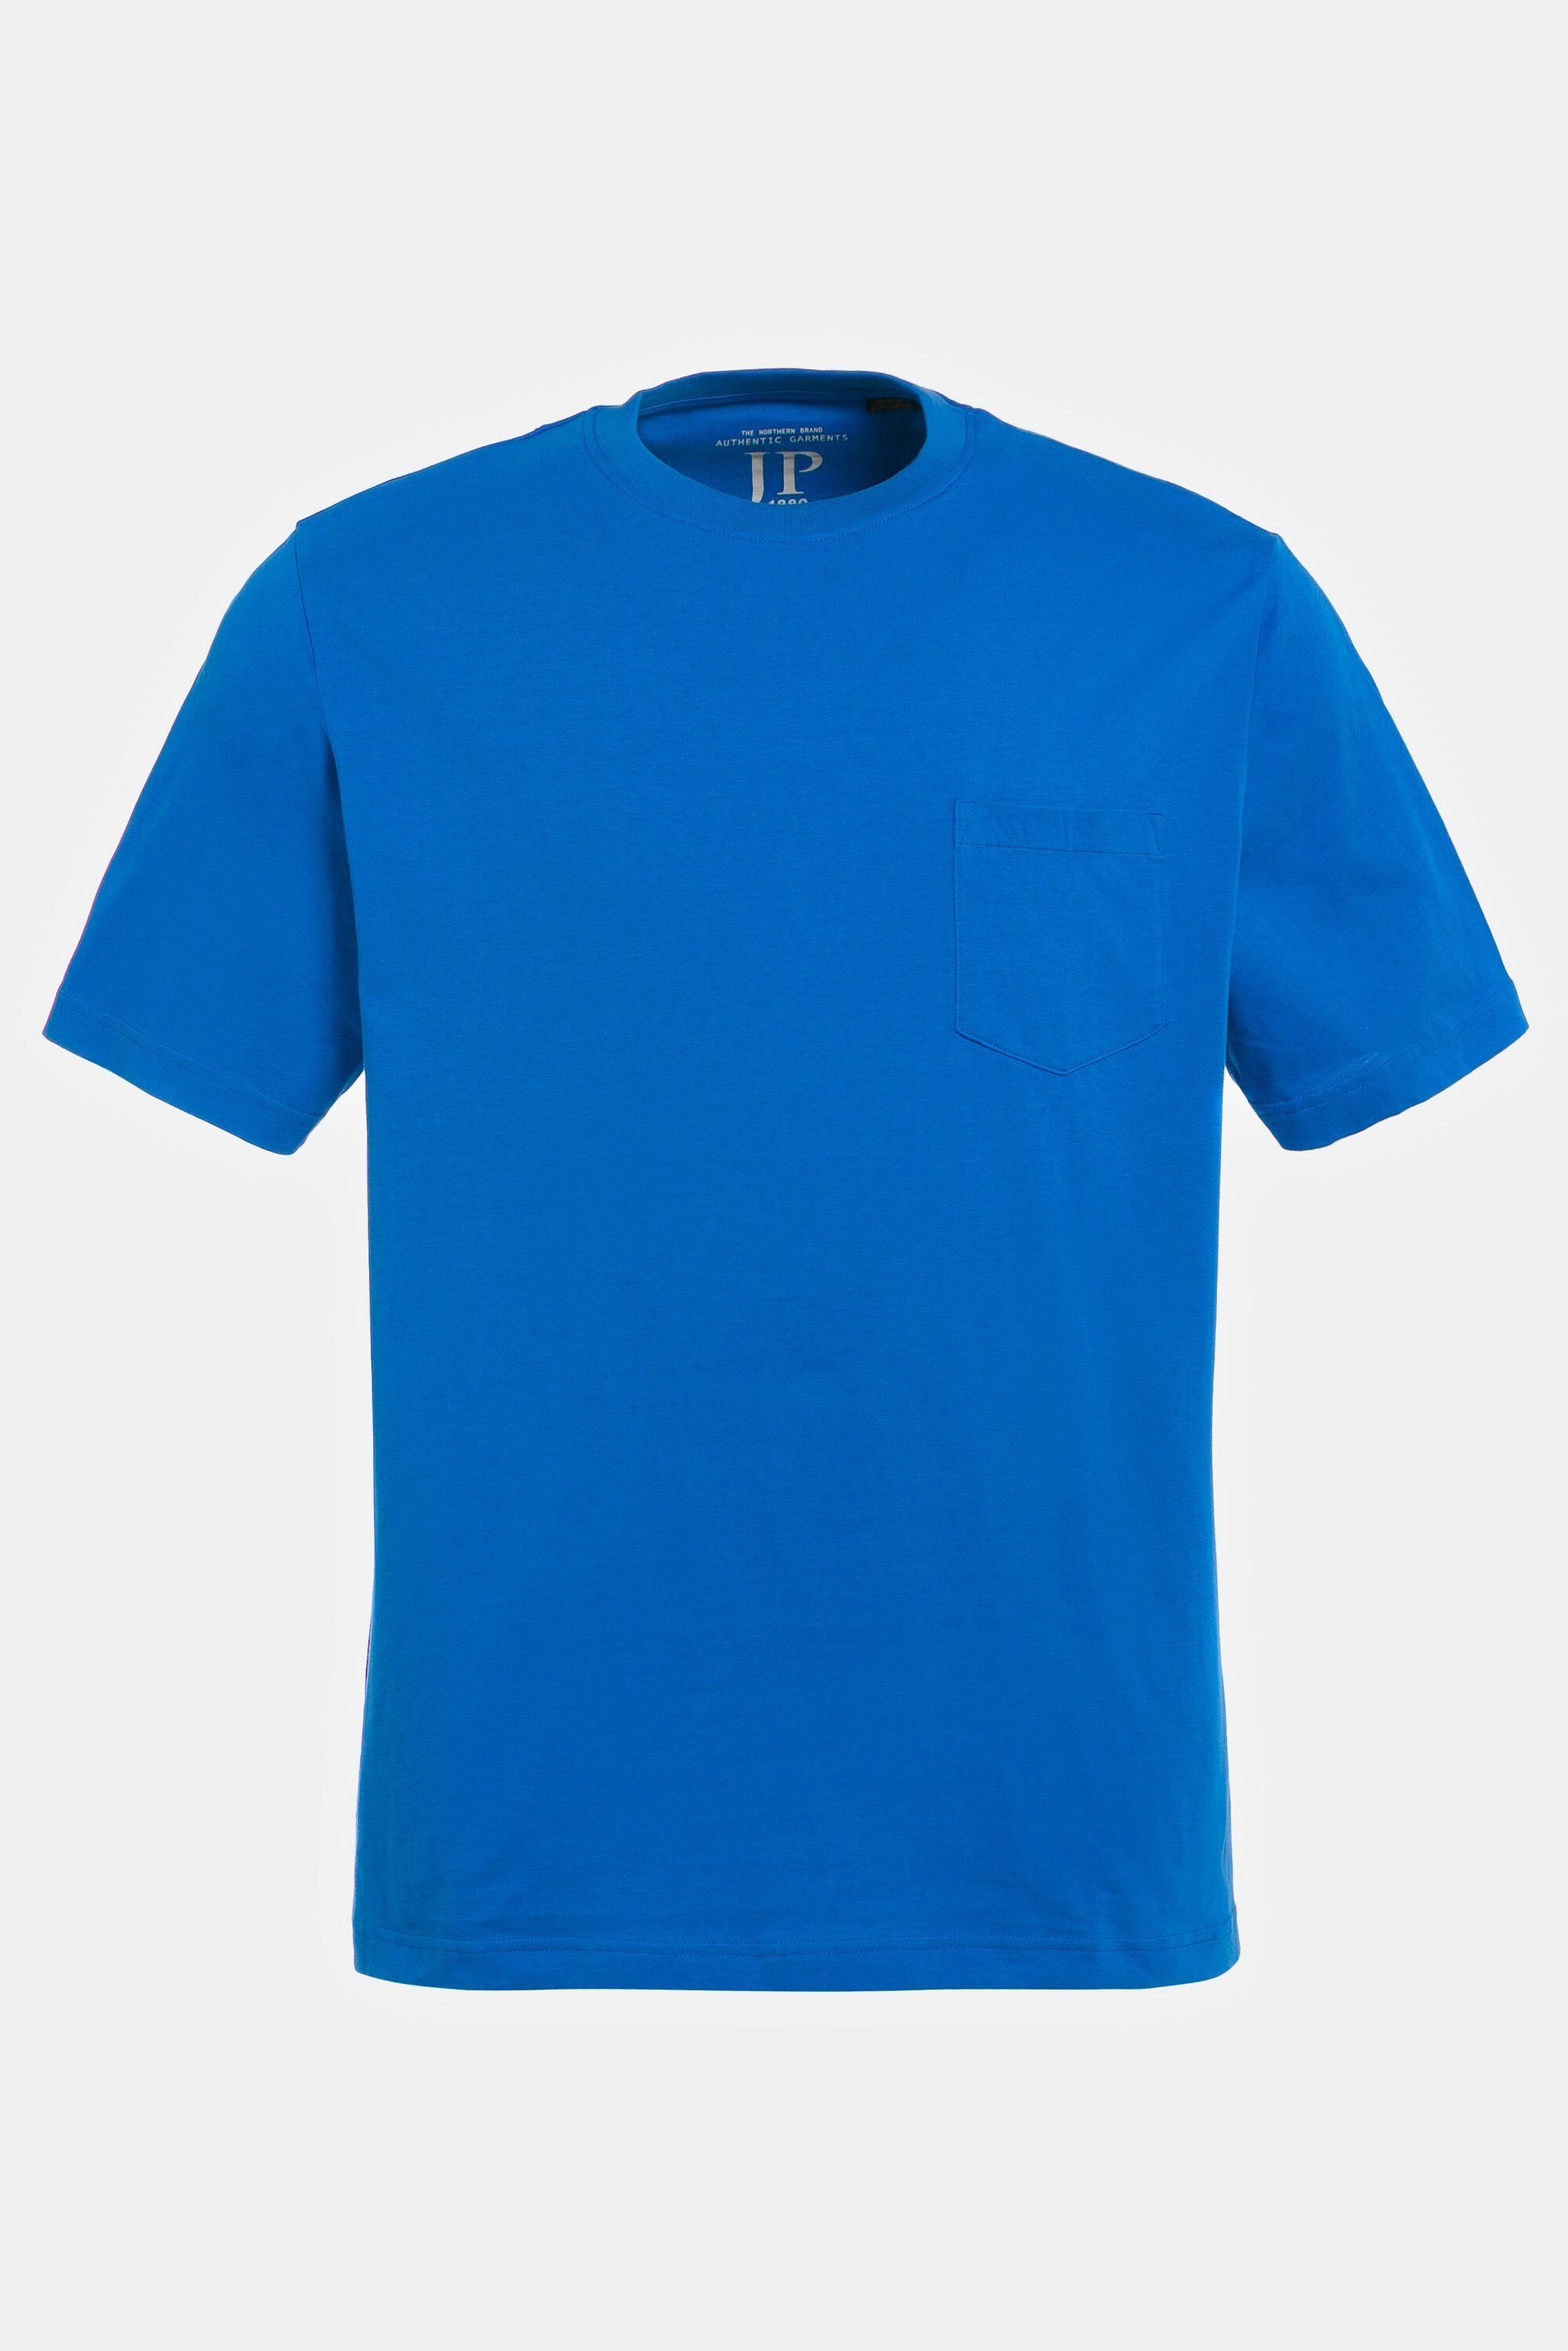 JP1880 T-Shirt T-Shirt Halbarm Brusttasche clematisblau